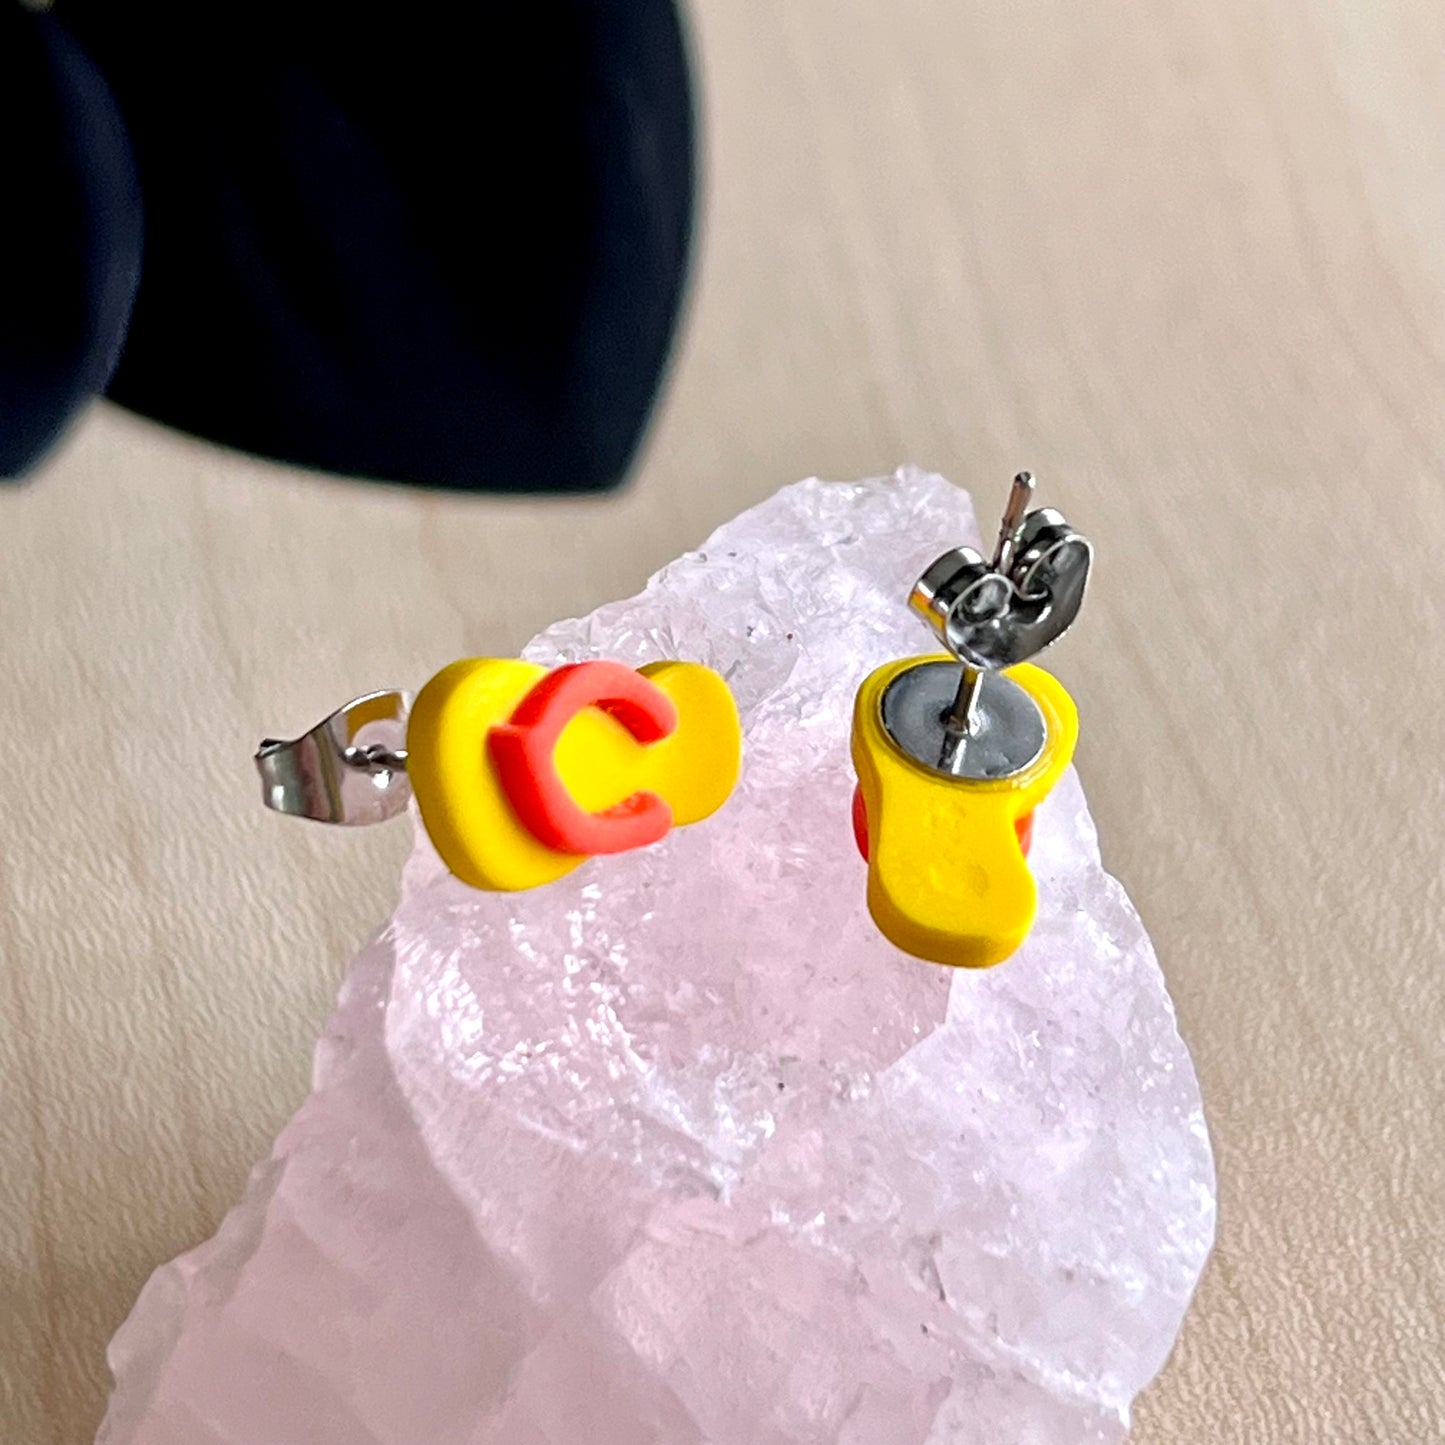 Thongs / flip flops studs, Yellow with orange, handmade earrings